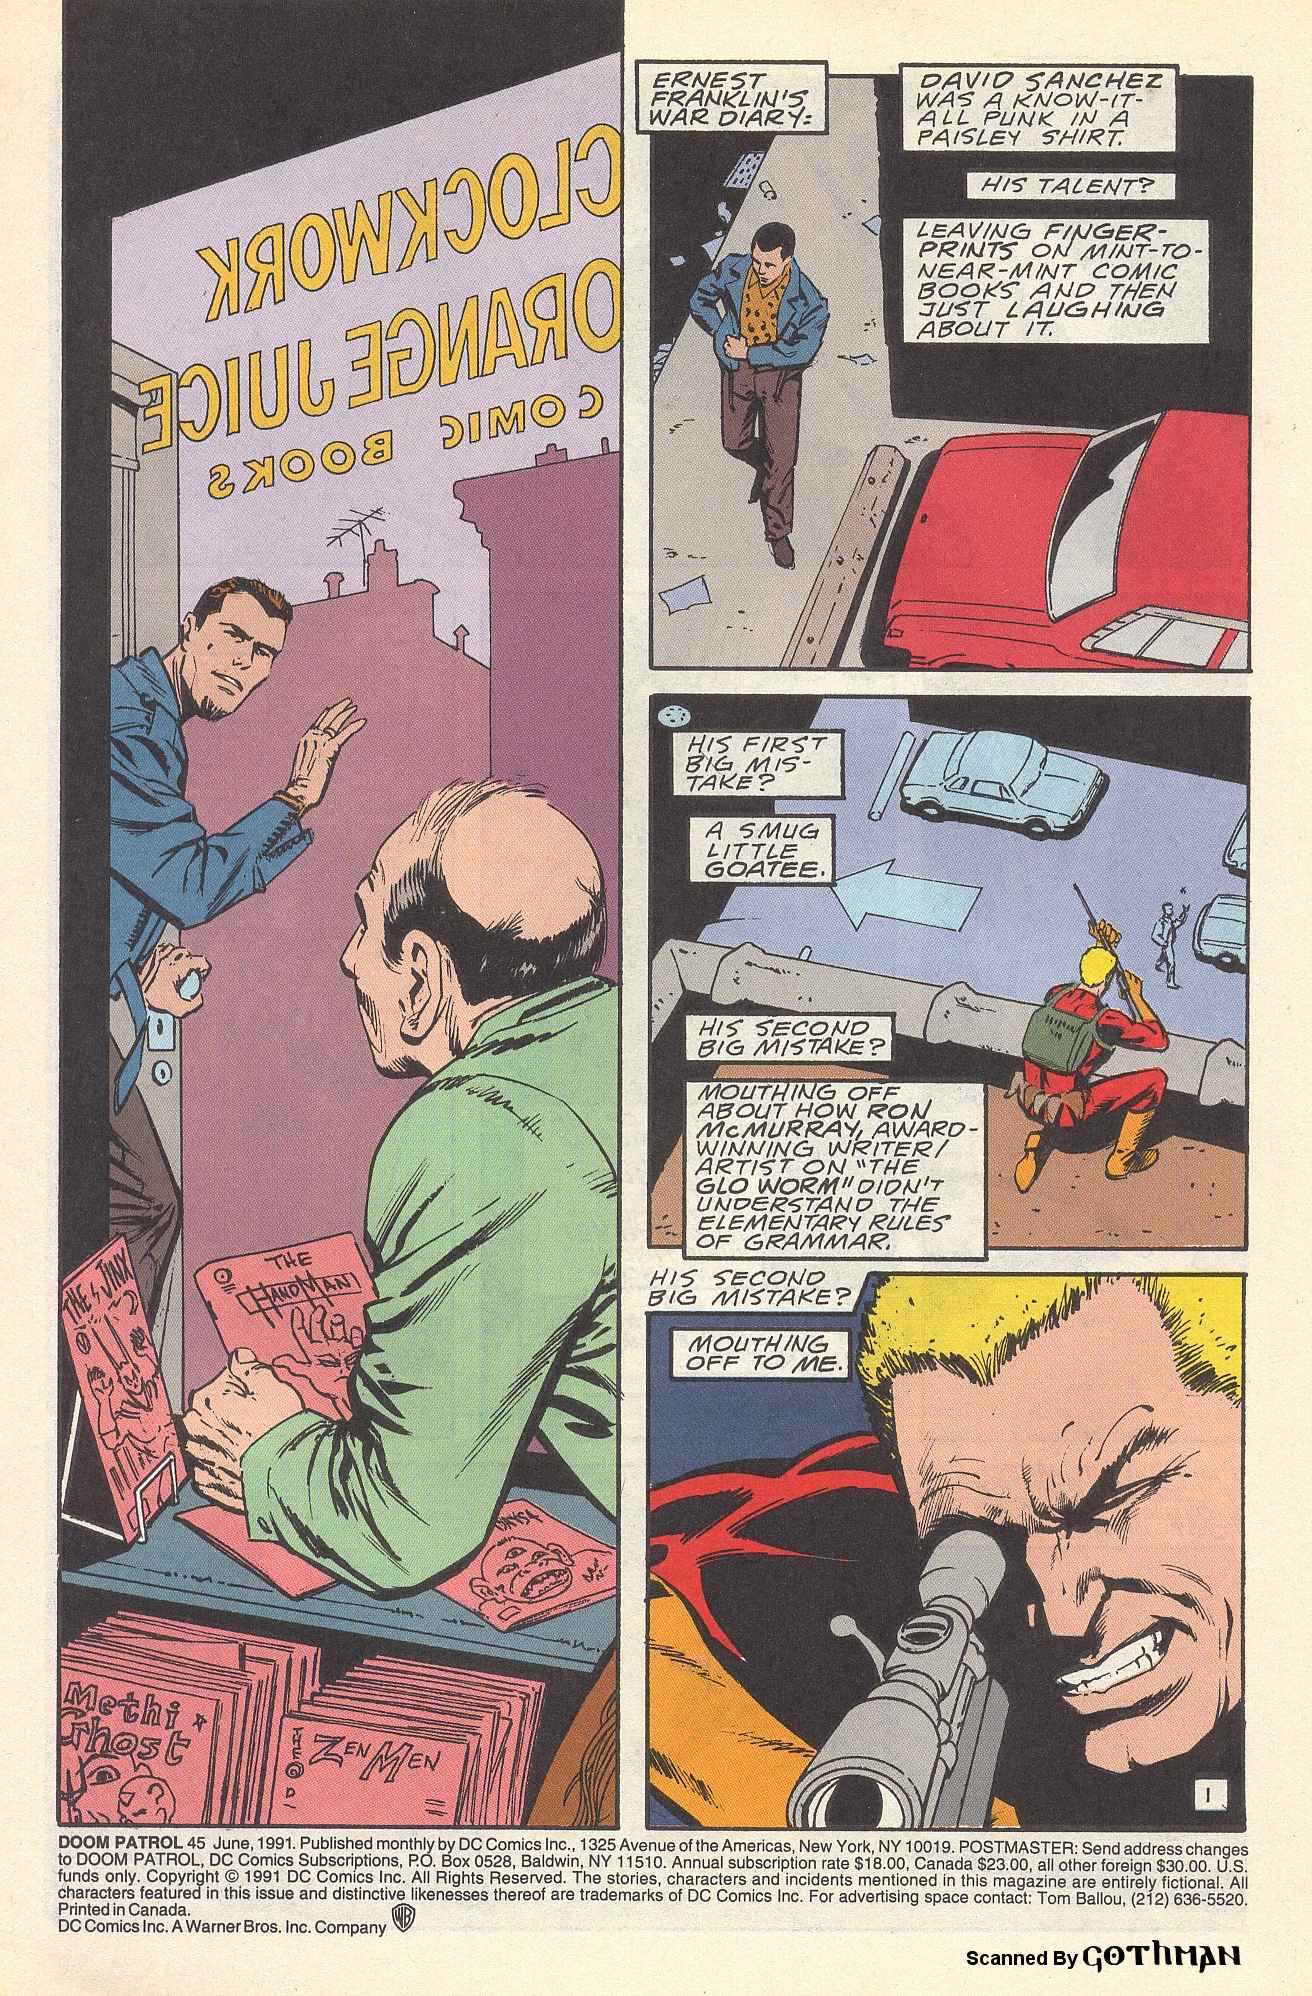 Doom Patrol 1987 series # 47 near mint comic book 